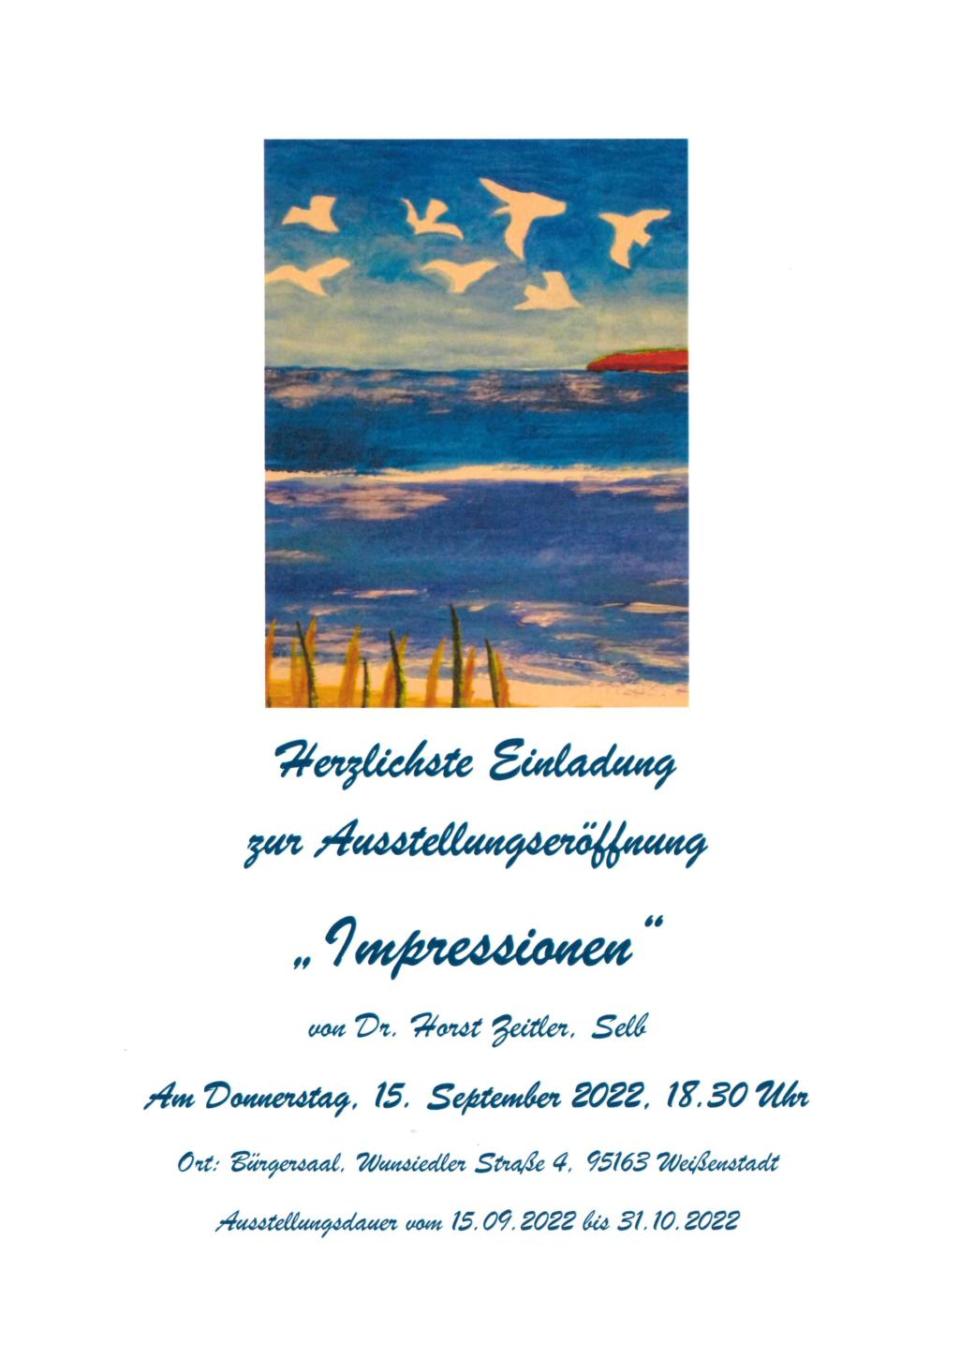 Ausstellungseröffnung von Dr. Horst Zeitler "Impressionen"